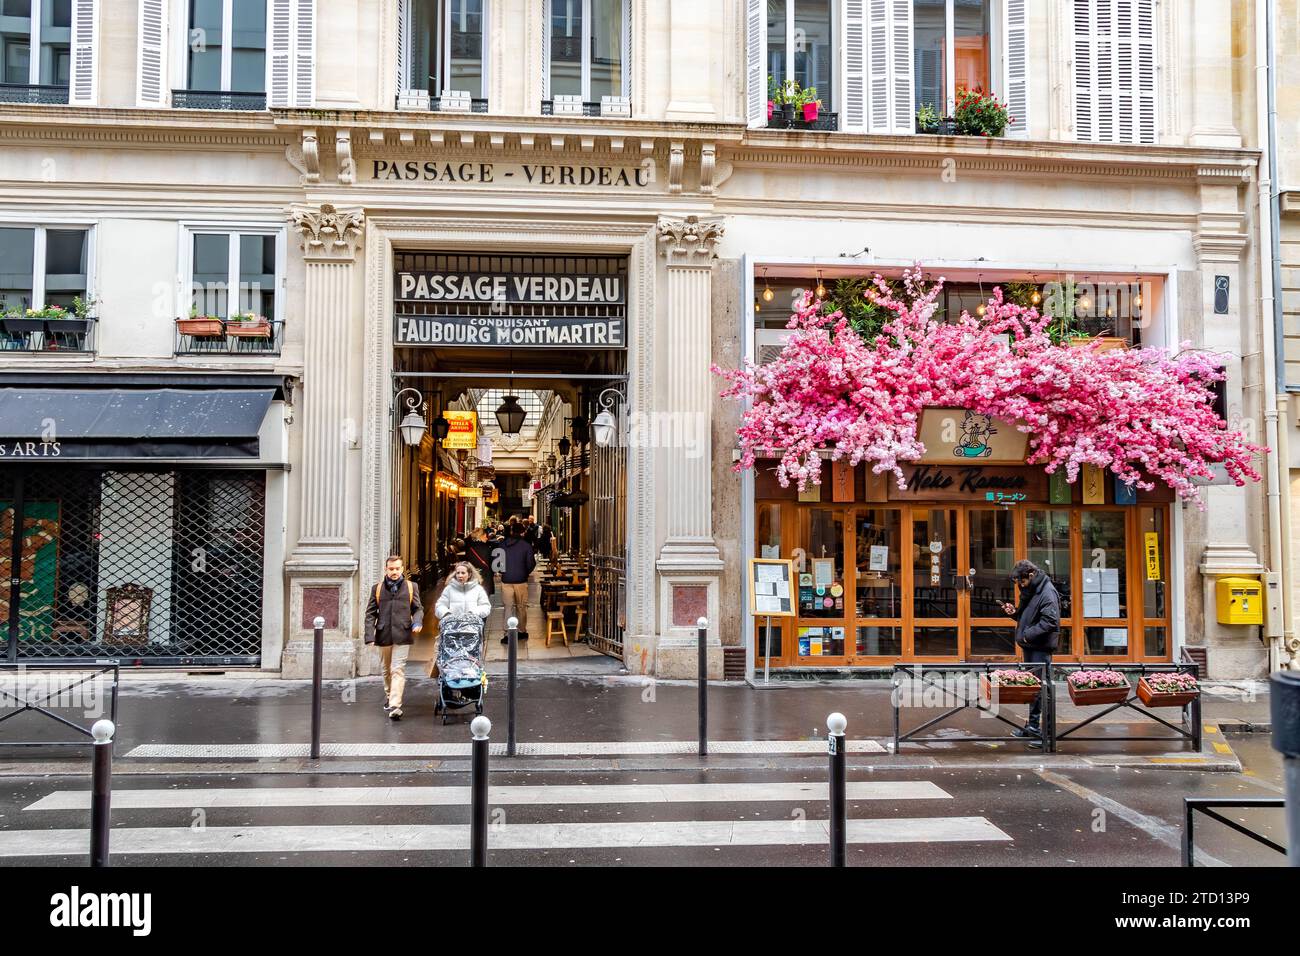 L'entrée du passage Verdeau une galerie marchande couverte située rue du Faubourg Montmartre dans le 9e arrondissement de Paris Banque D'Images